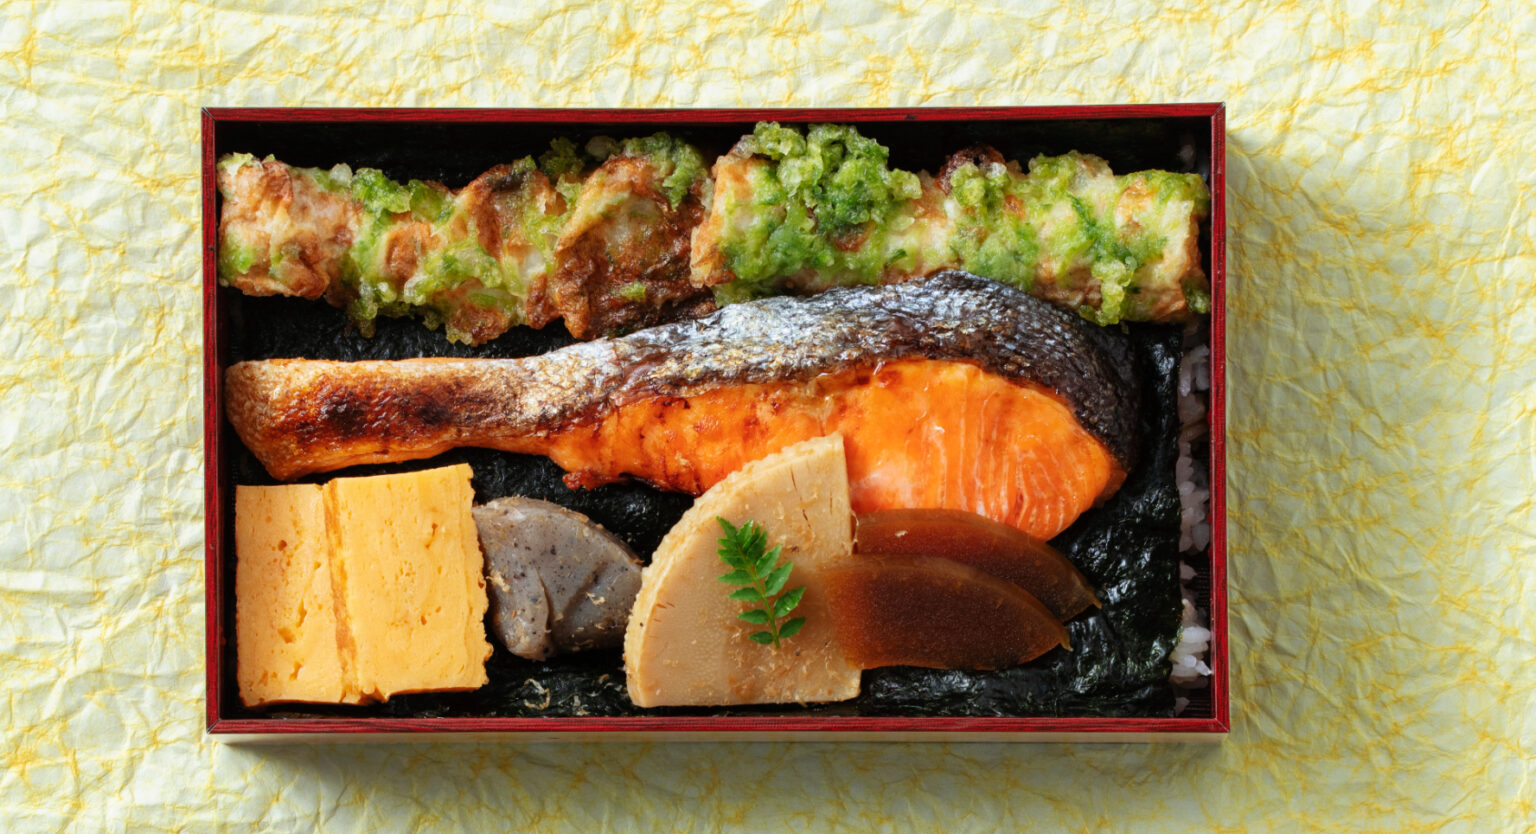 特製海苔弁当1,000円。銀鮭の塩焼きをはじめ、人気の和惣菜が贅沢に。